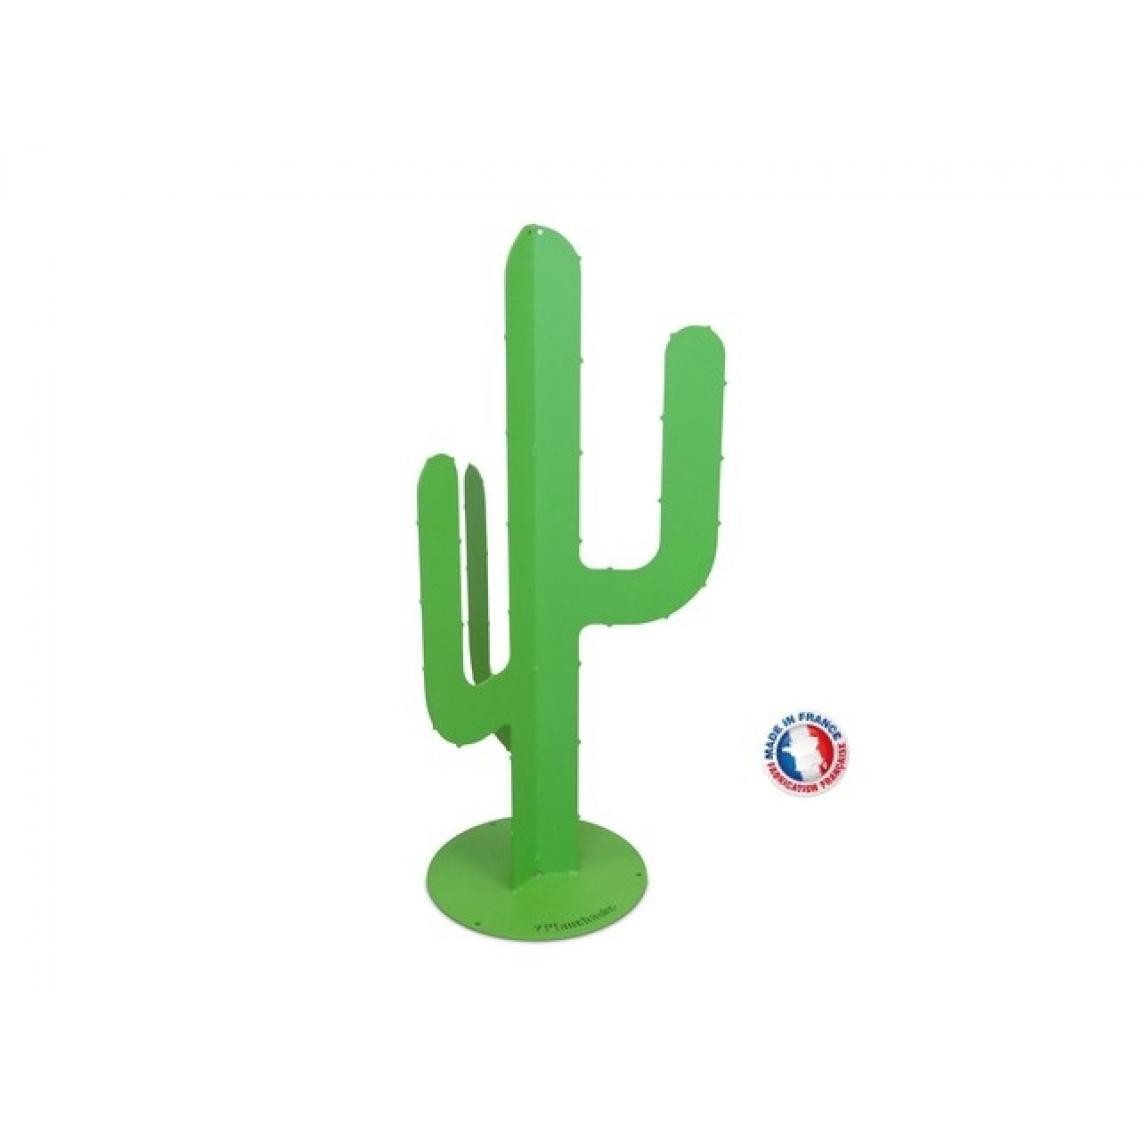 Planchaelec - Cactus en métal H.115 vert - Petite déco d'exterieur